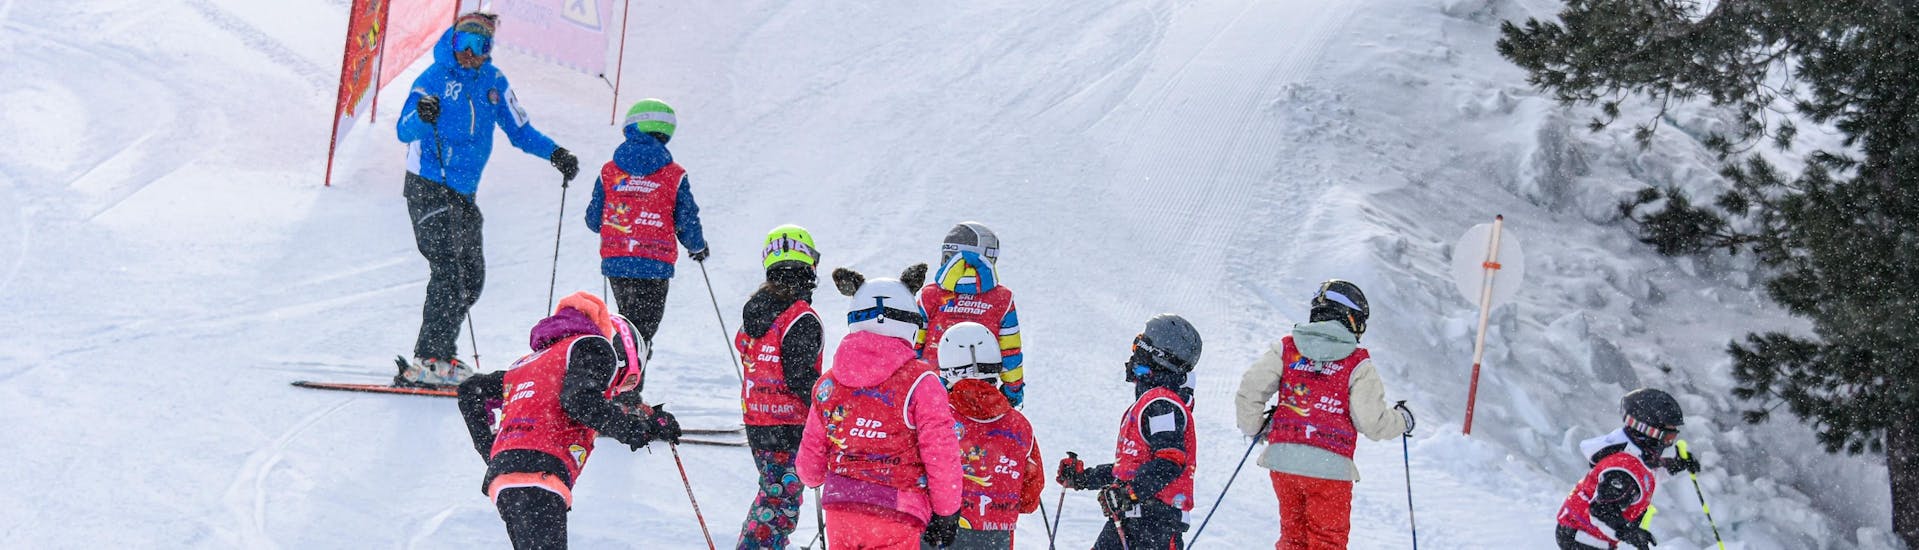 Skilessen voor kinderen met Scuola Sci e Snowboard Alpe di Pampeago - Hero image